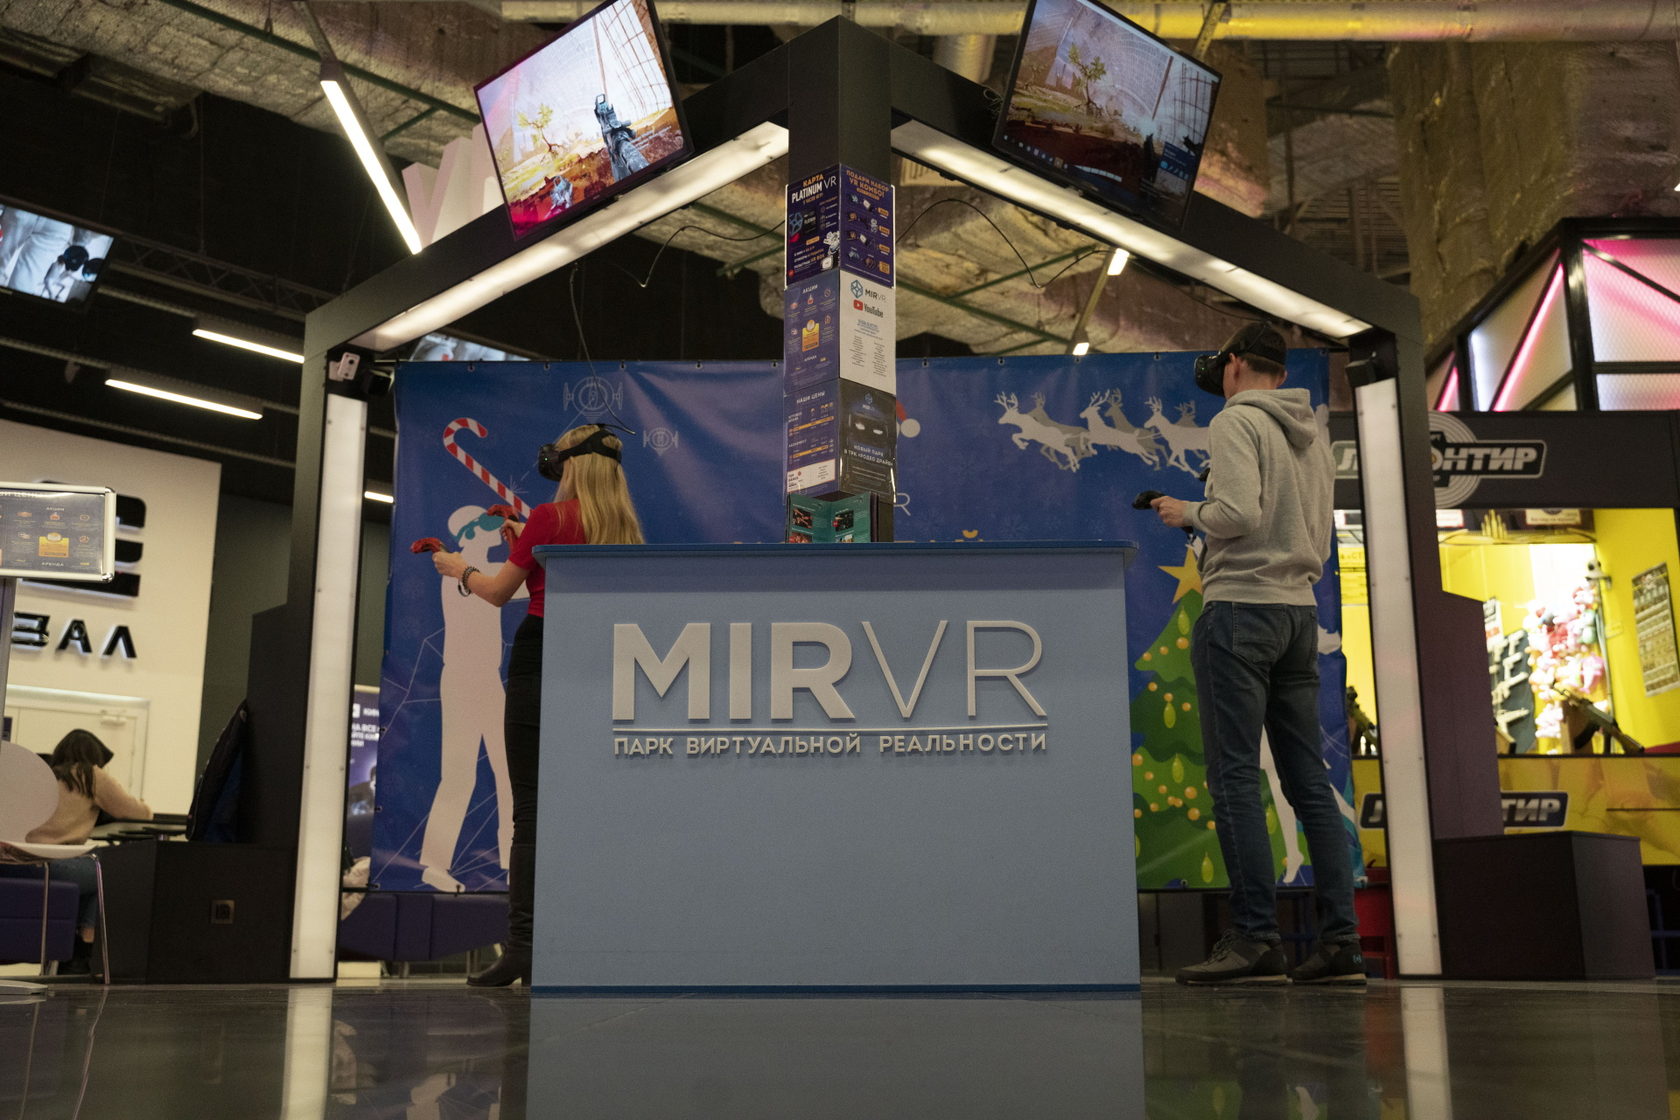 Vr франшиза. Mir VR Кубус. Франшиза VR lo'v'e.